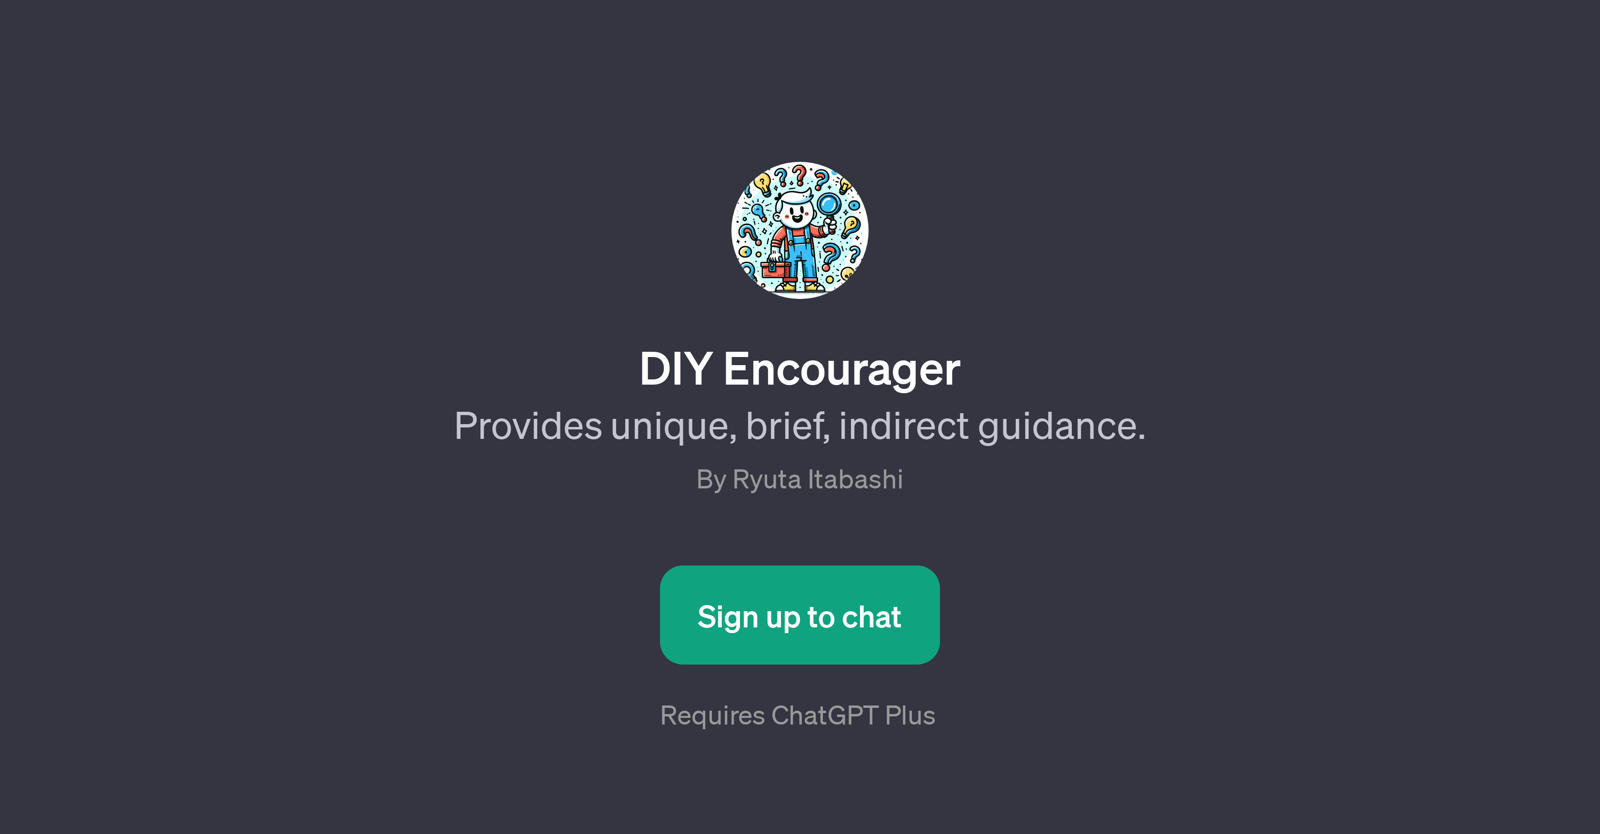 DIY Encourager website